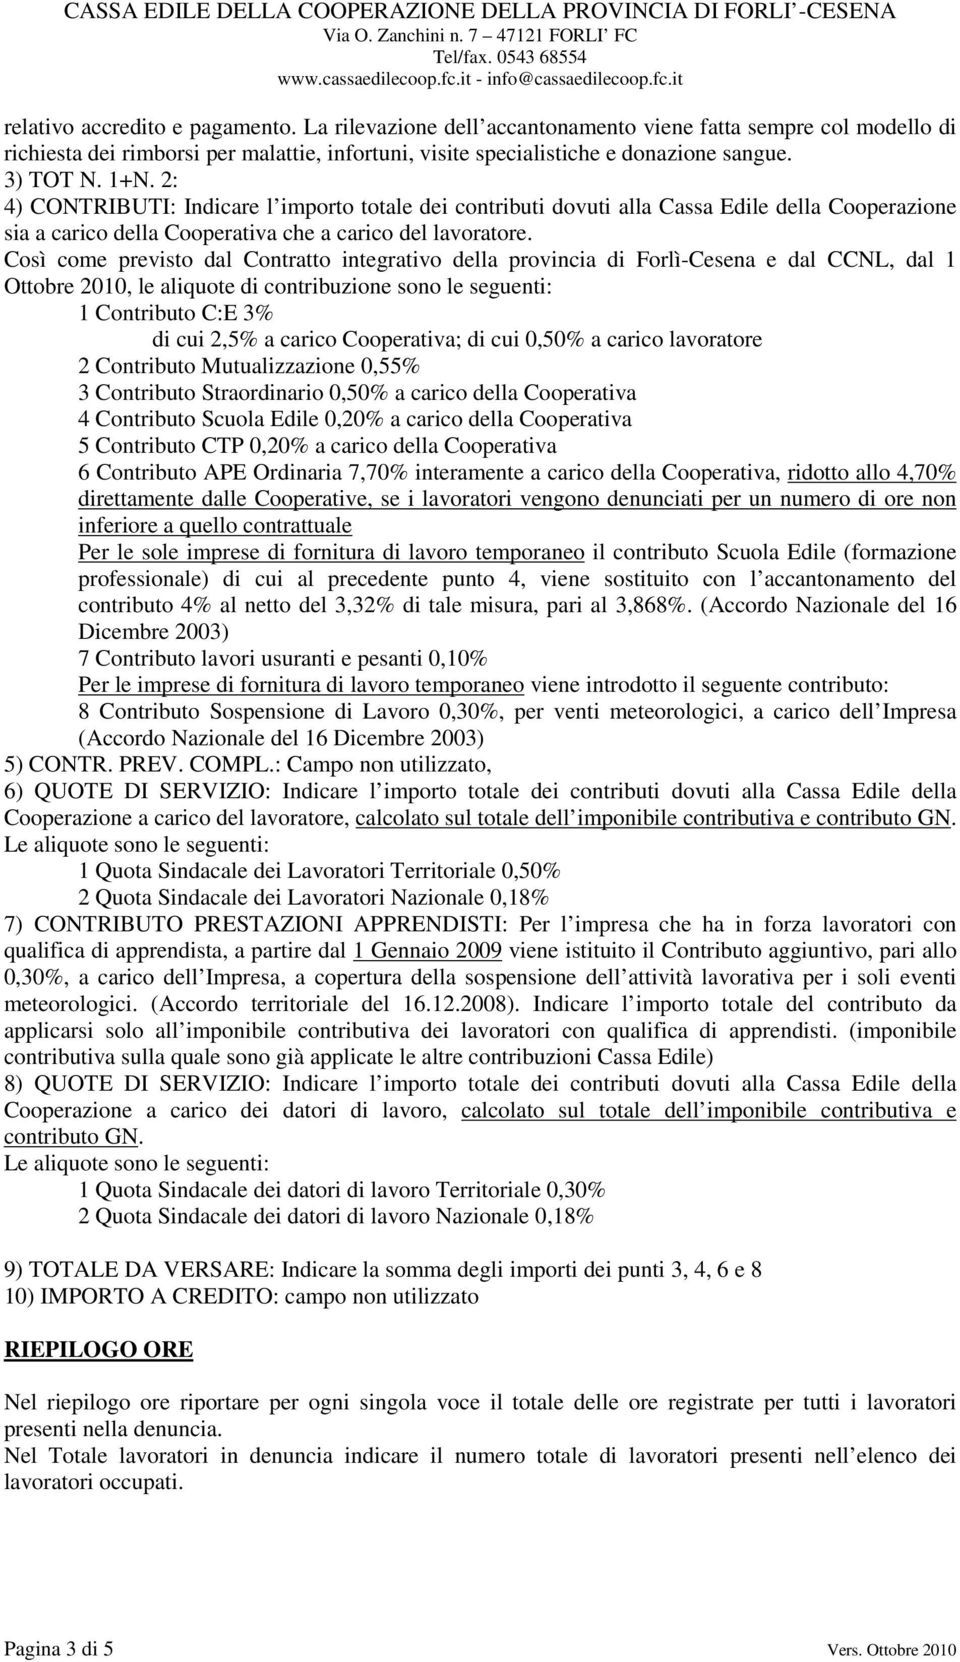 Così come previsto dal Contratto integrativo della provincia di Forlì-Cesena e dal CCNL, dal 1 Ottobre 2010, le aliquote di contribuzione sono le seguenti: 1 Contributo C:E 3% di cui 2,5% a carico